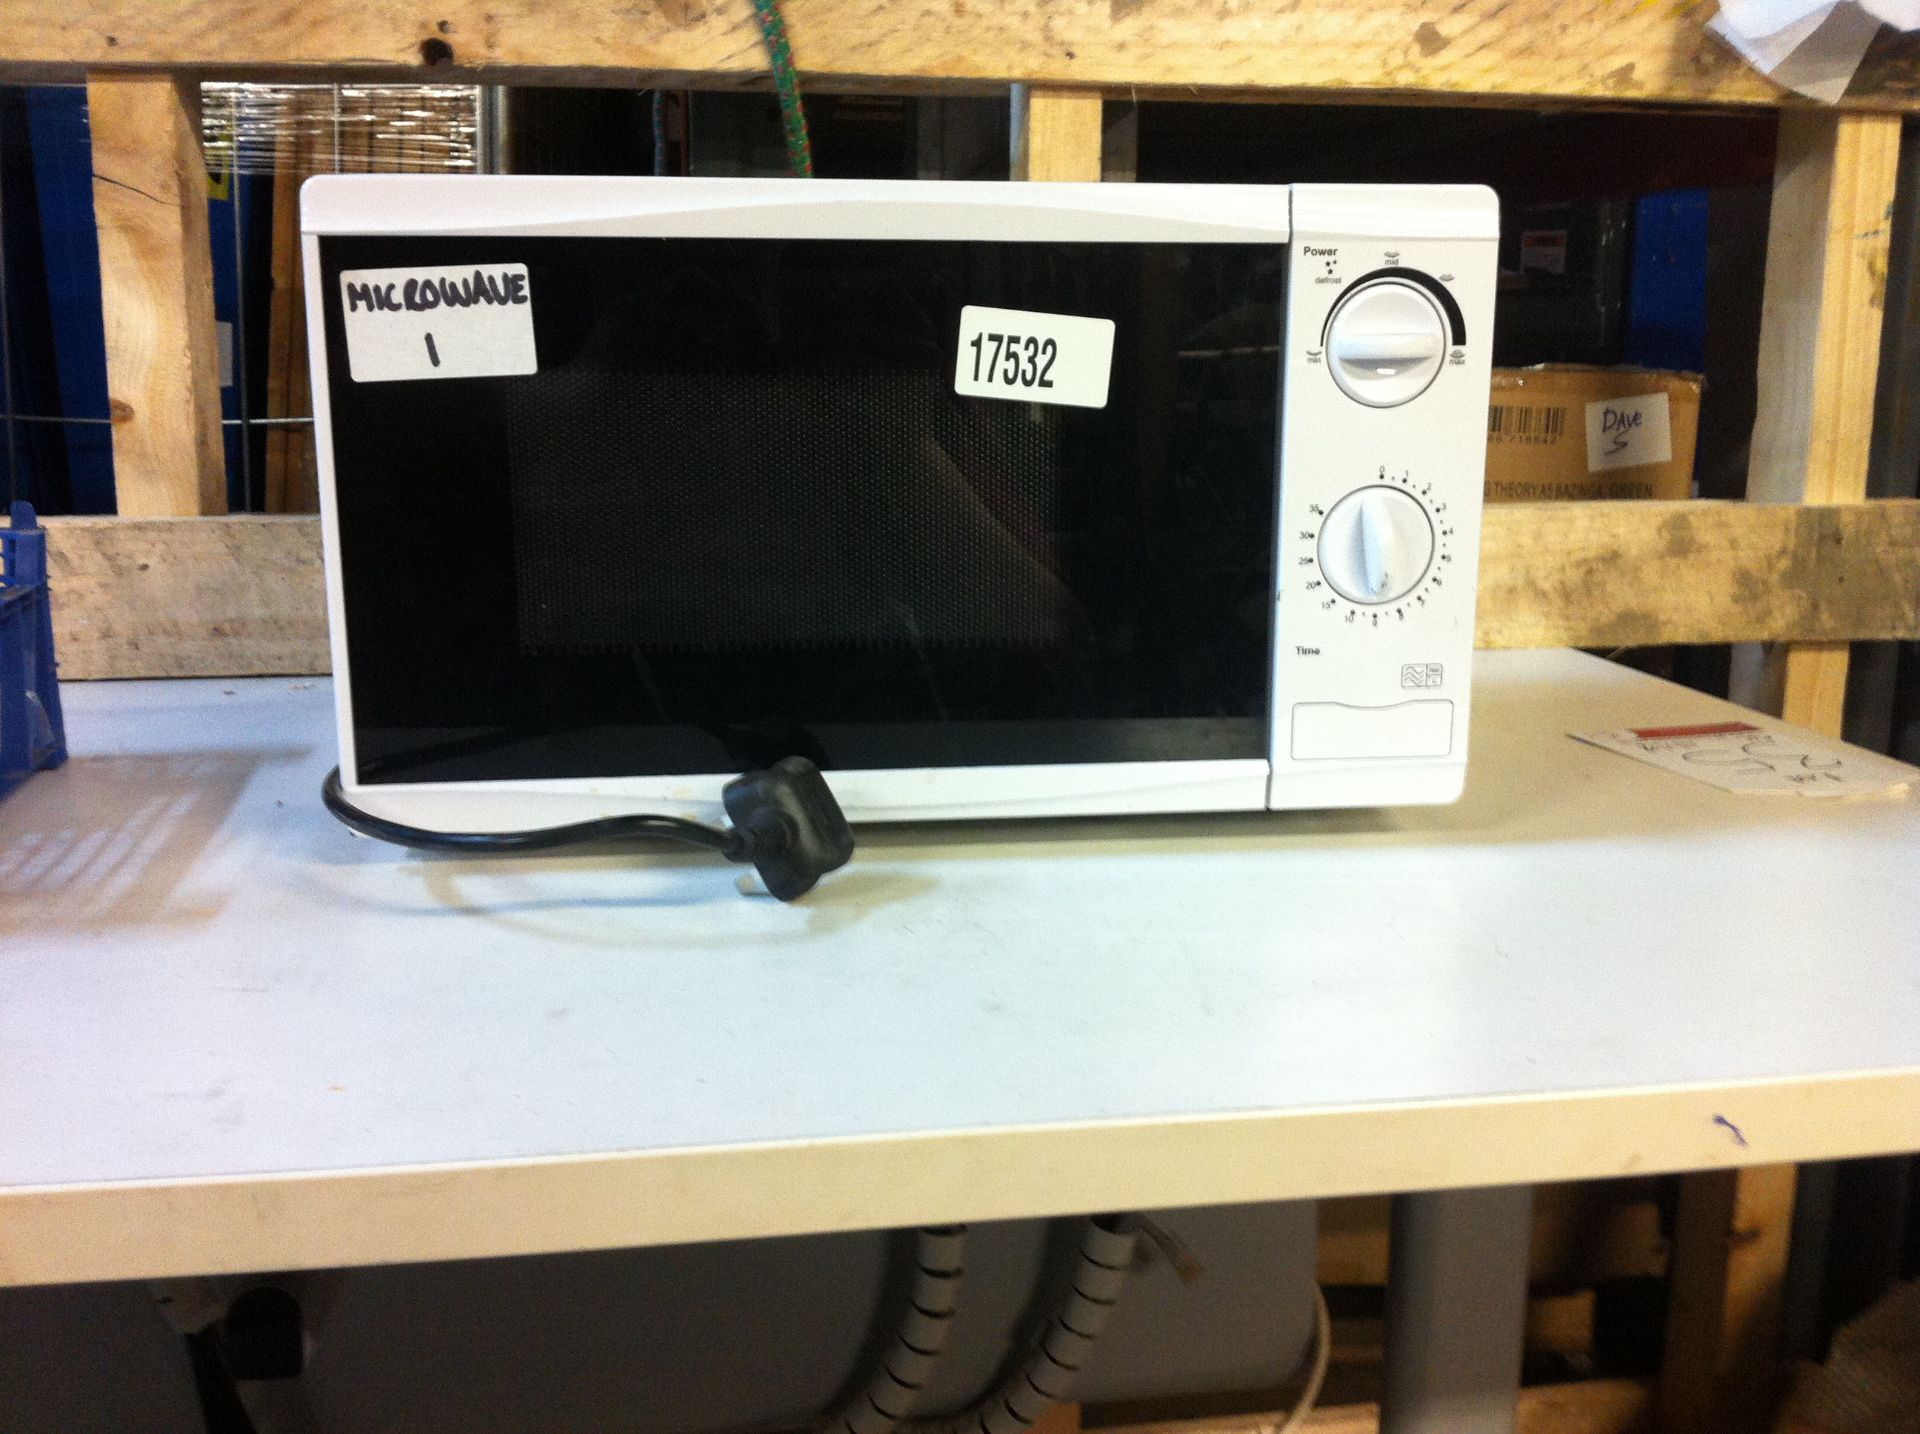 Tesco 240V Microwave Oven, Kenwood Blender and Tesco blender